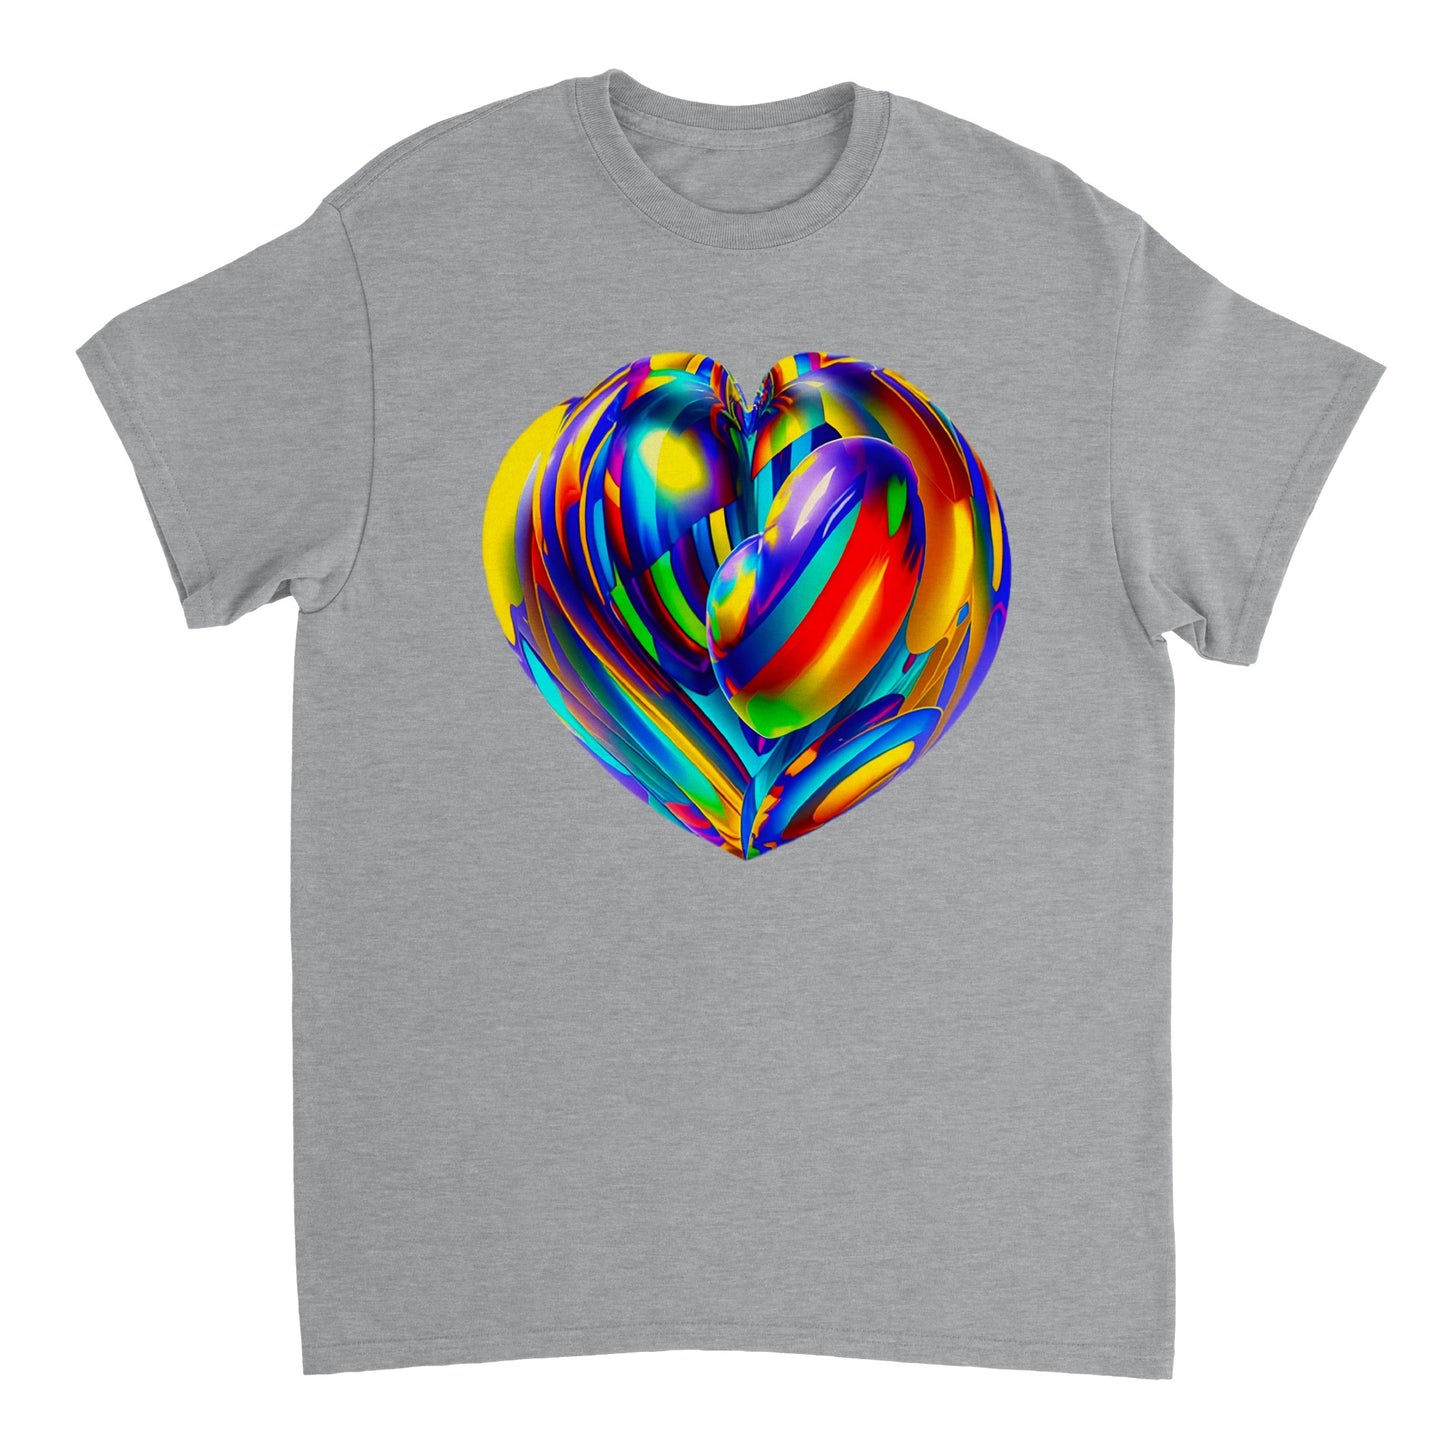 Love Heart - Heavyweight Unisex Crewneck T-shirt 86